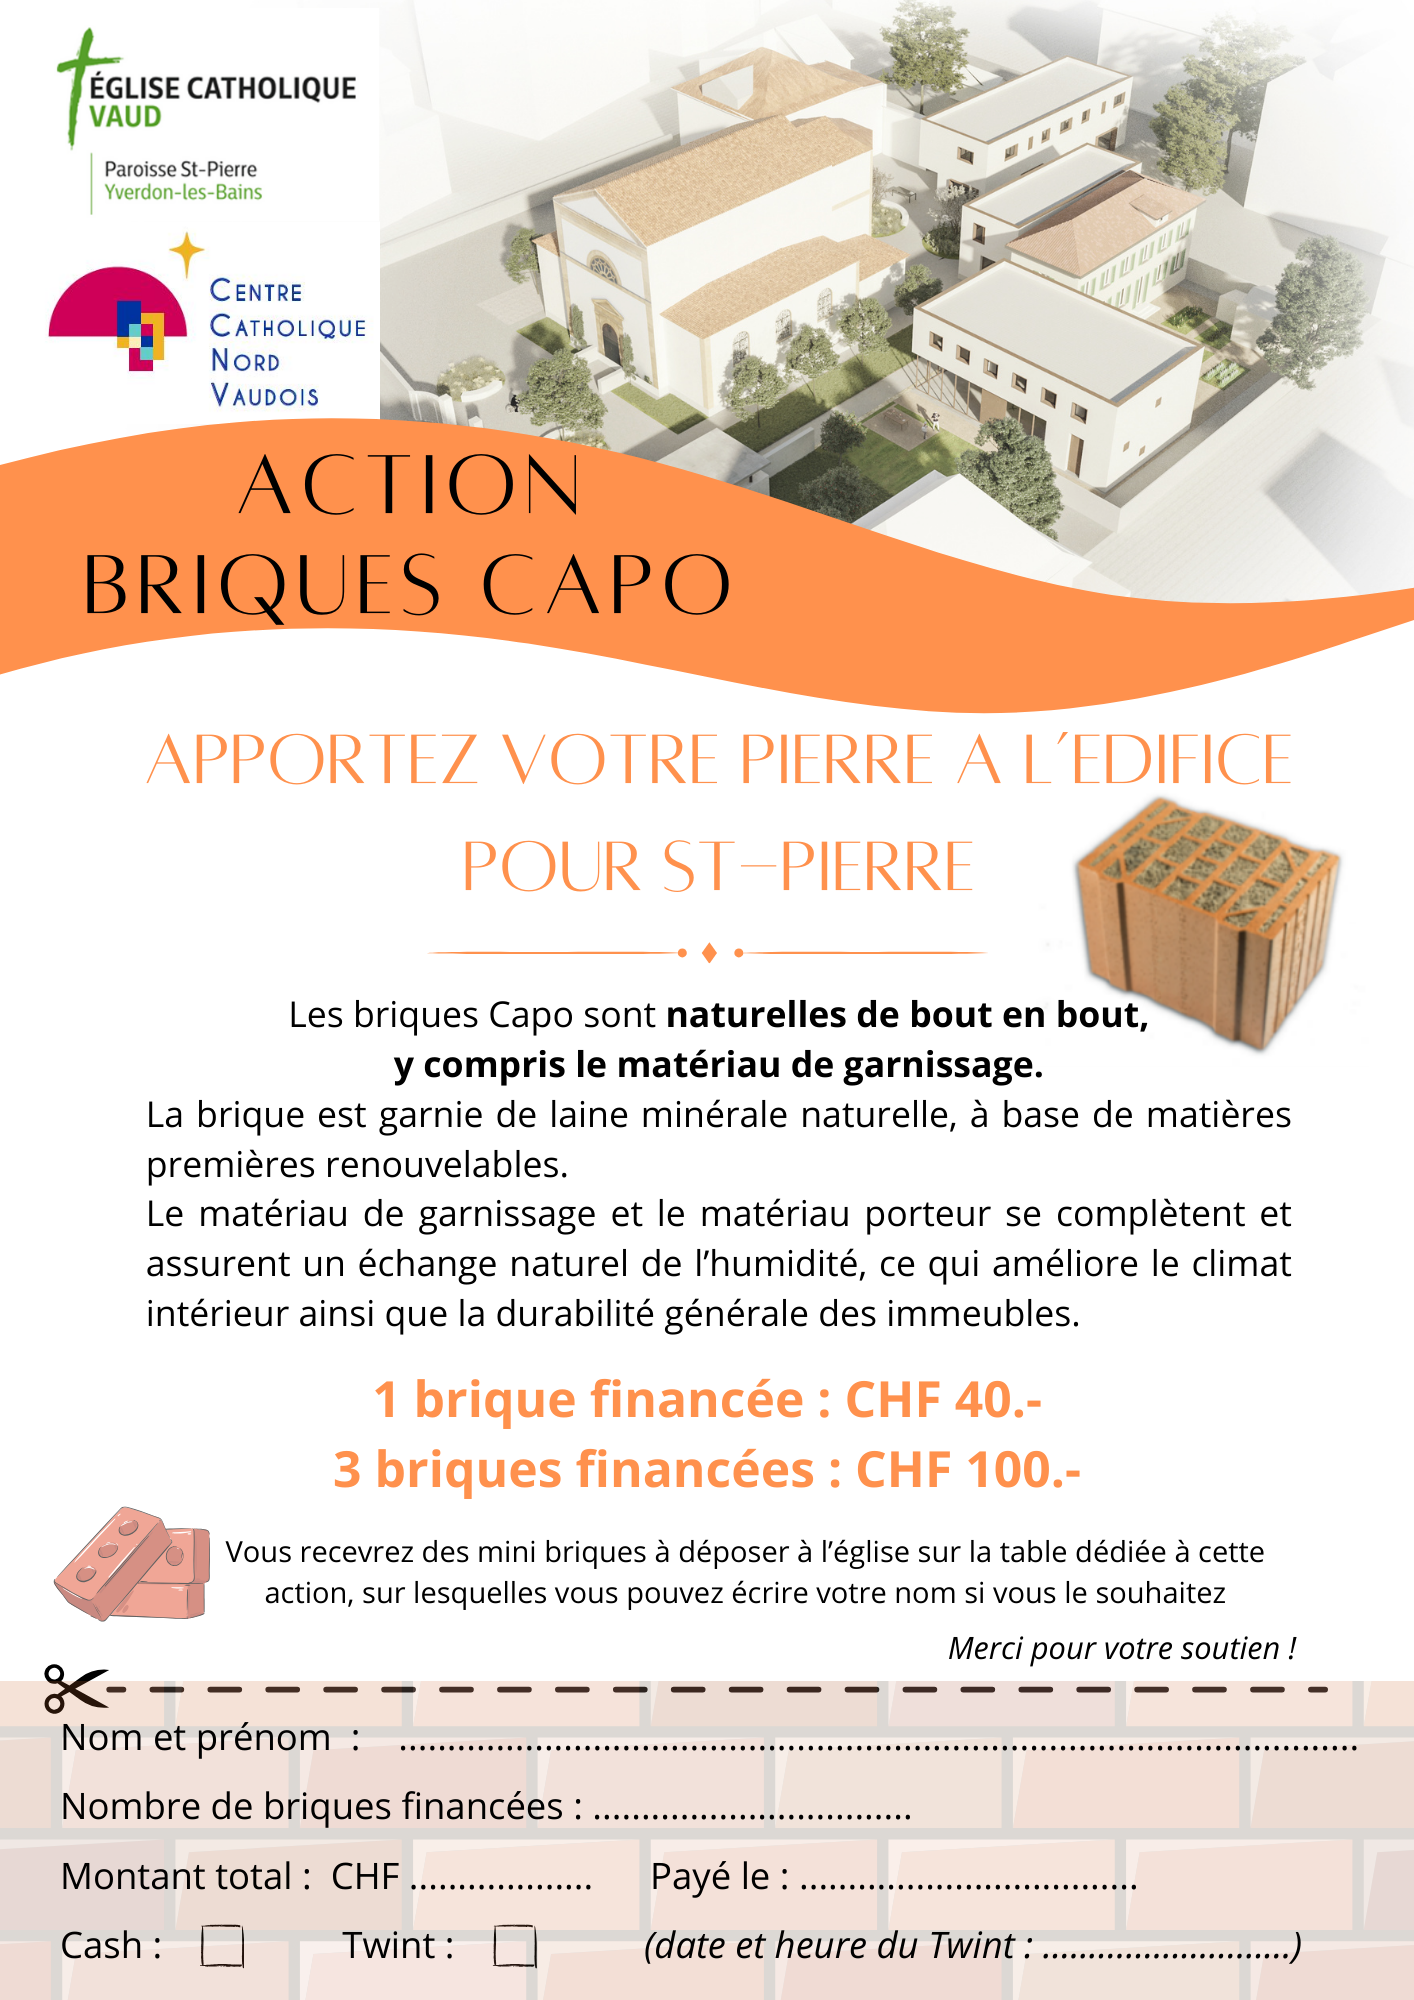 Action briques CAPO